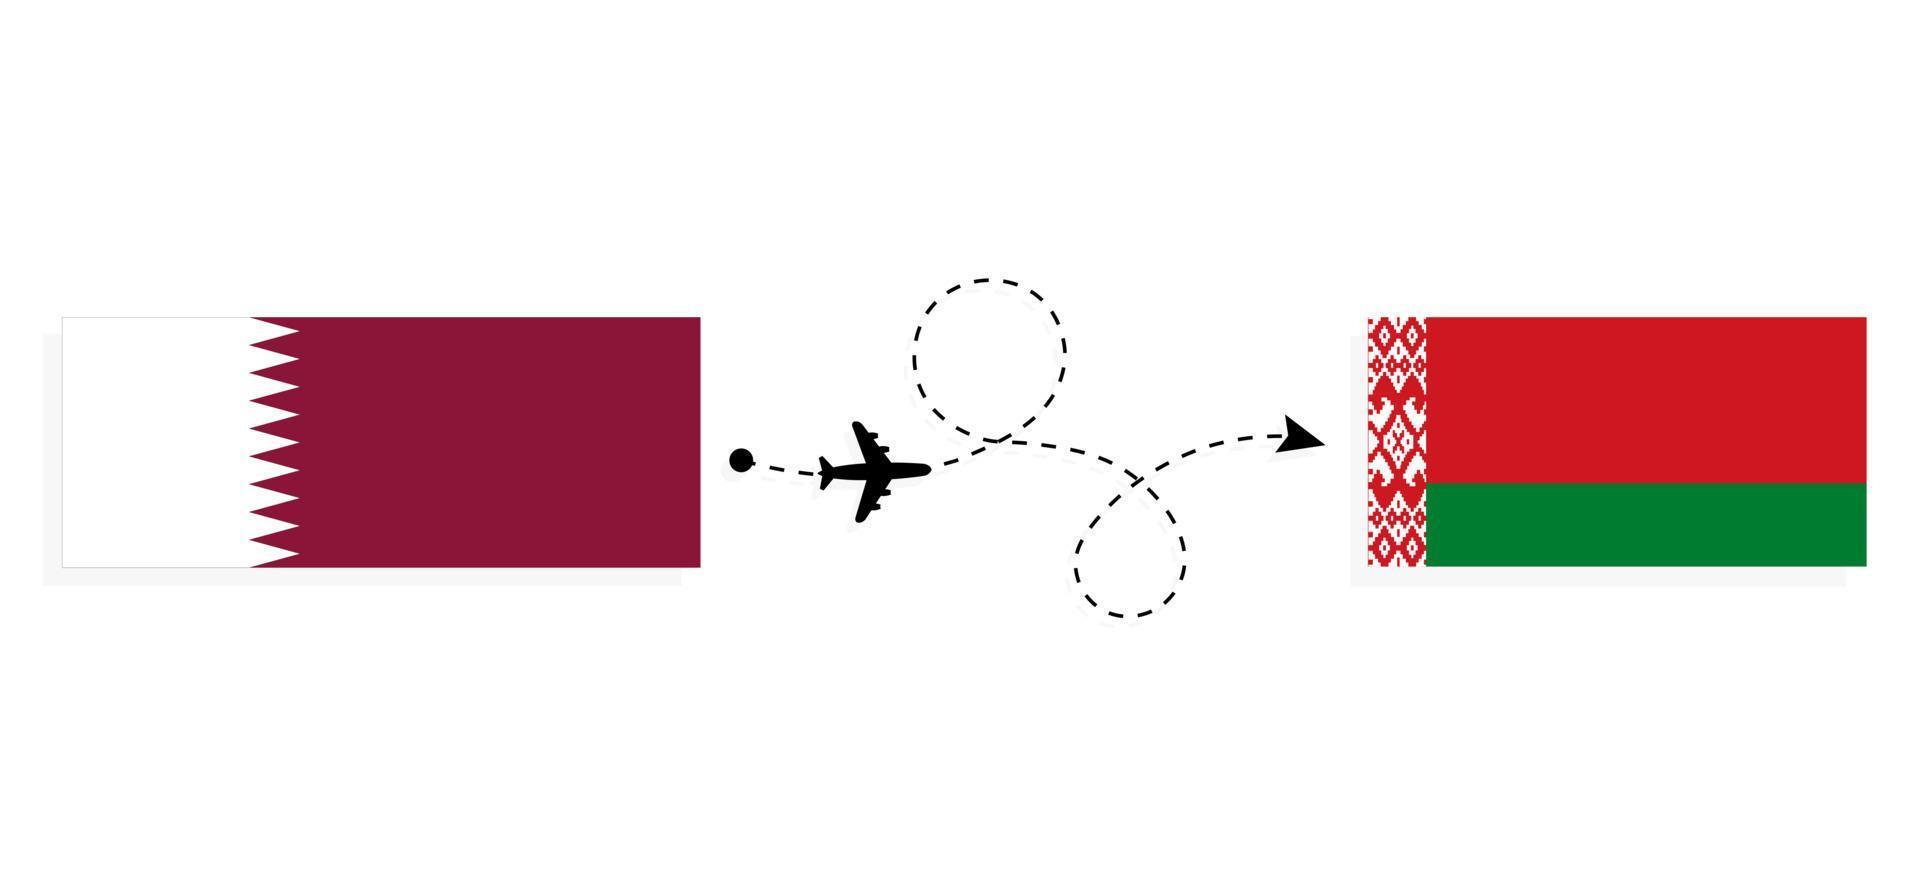 vol et voyage du qatar à la biélorussie par concept de voyage en avion de passagers vecteur